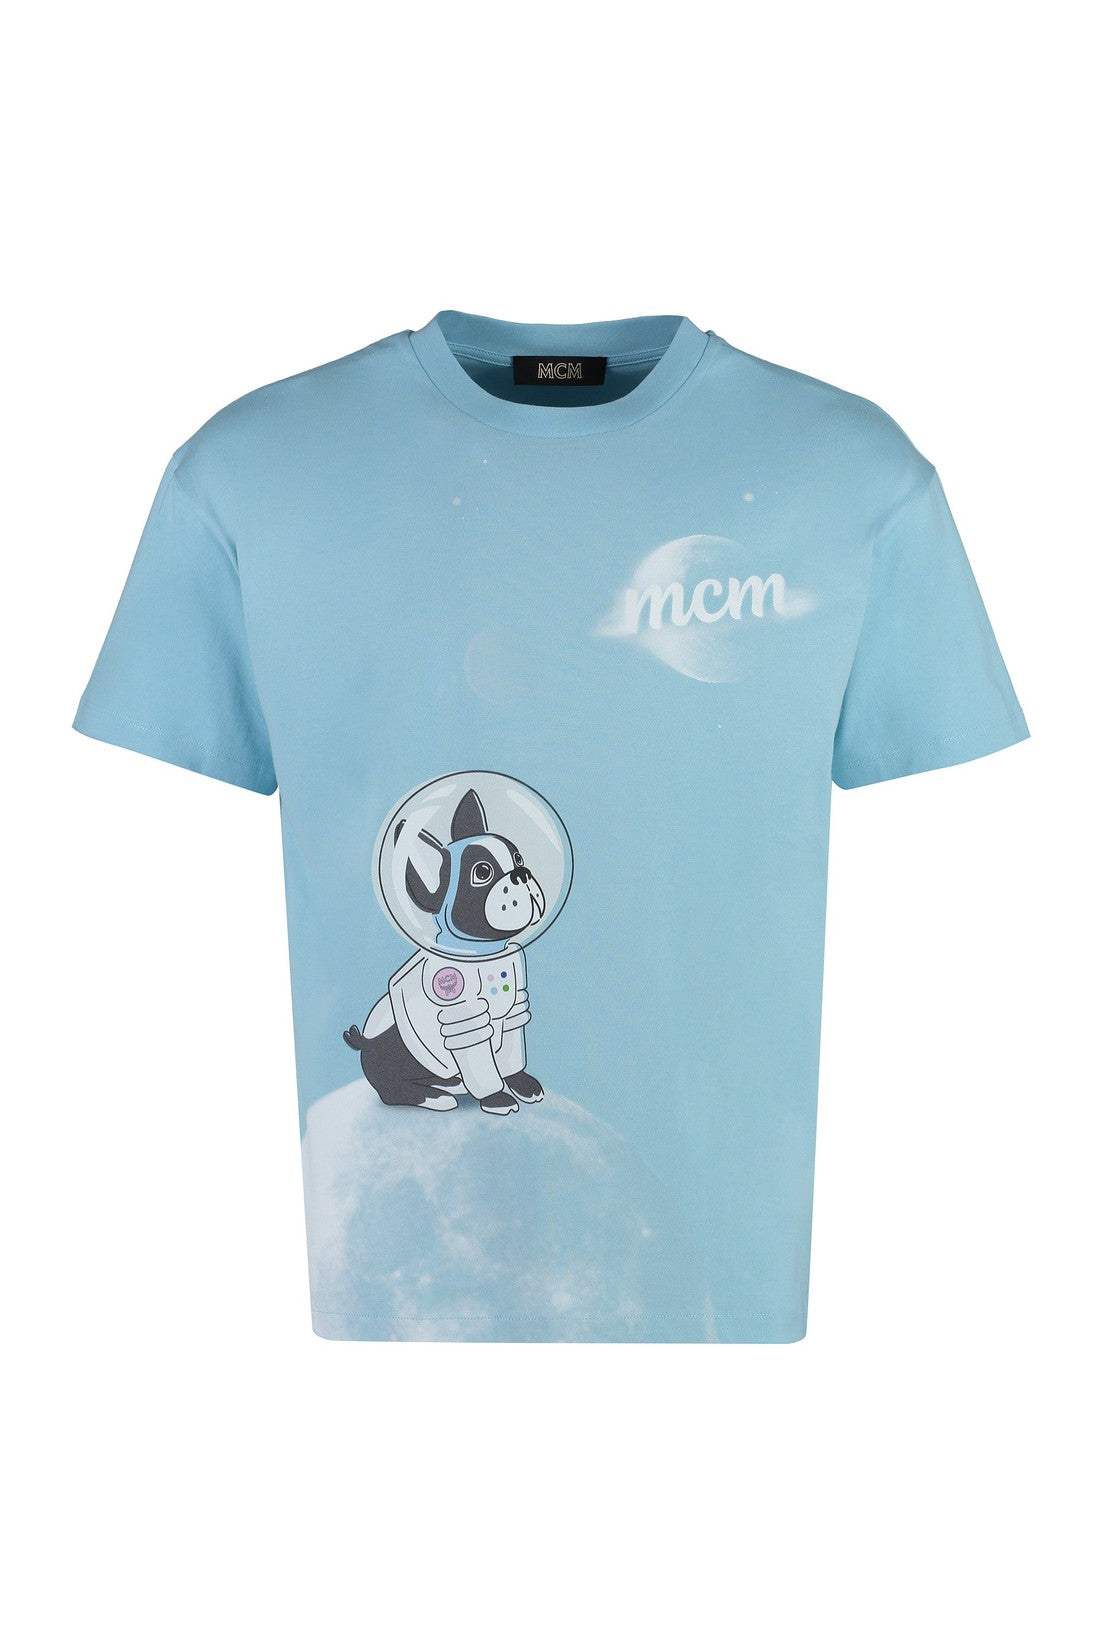 MCM-OUTLET-SALE-Printed cotton T-shirt-ARCHIVIST